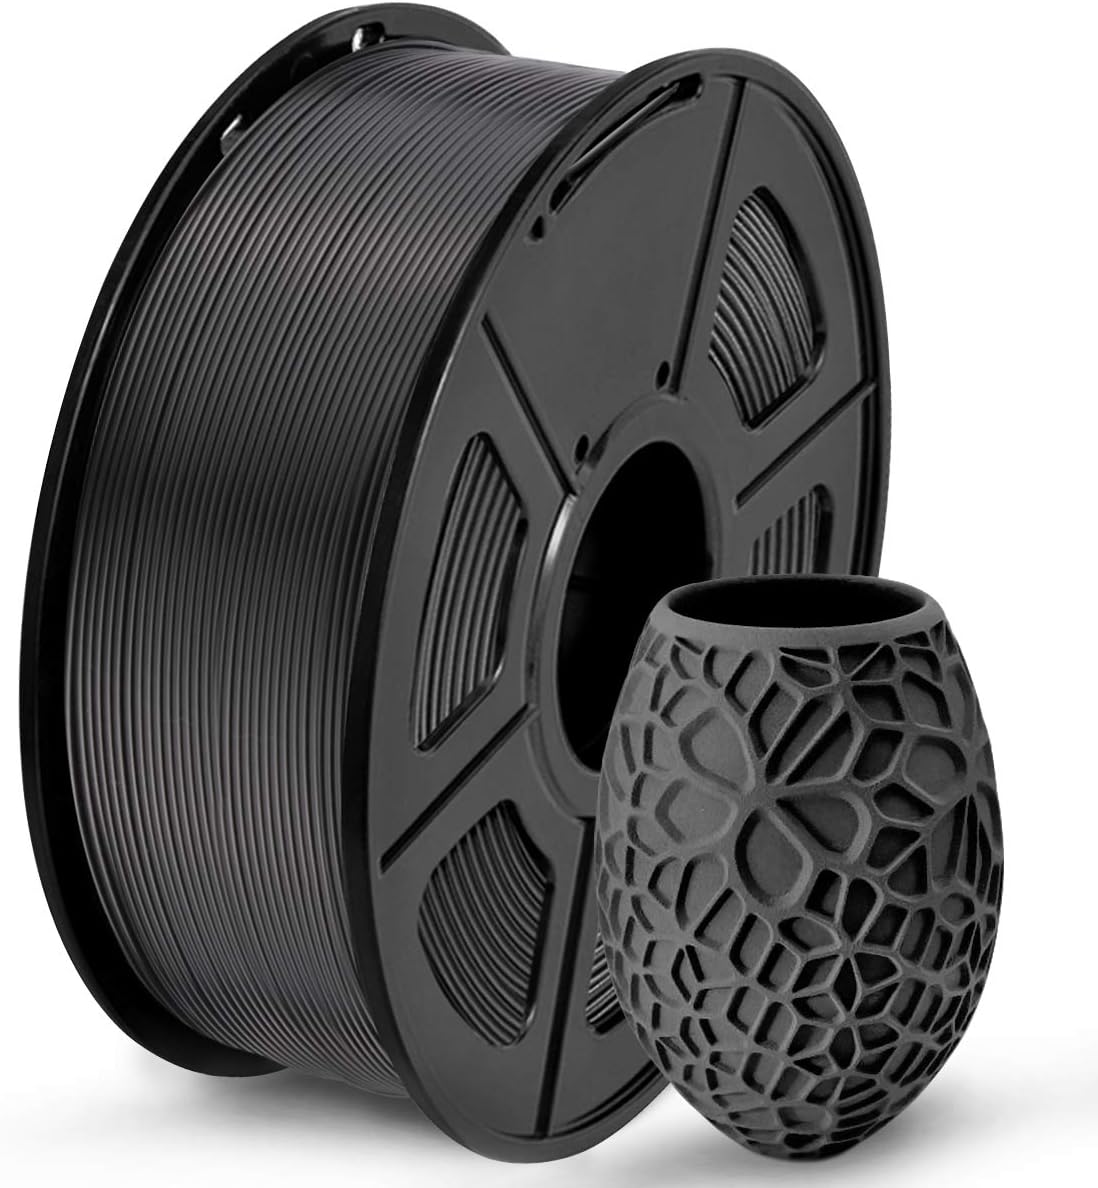 sunlu-pla-3d-printer-filament-pla-filament-175mm-neatly-wound-pla-3d-printing-filament-175mm-dimensional-accuracy-002-mm SUNLU PLA 3D Printer Filament Review